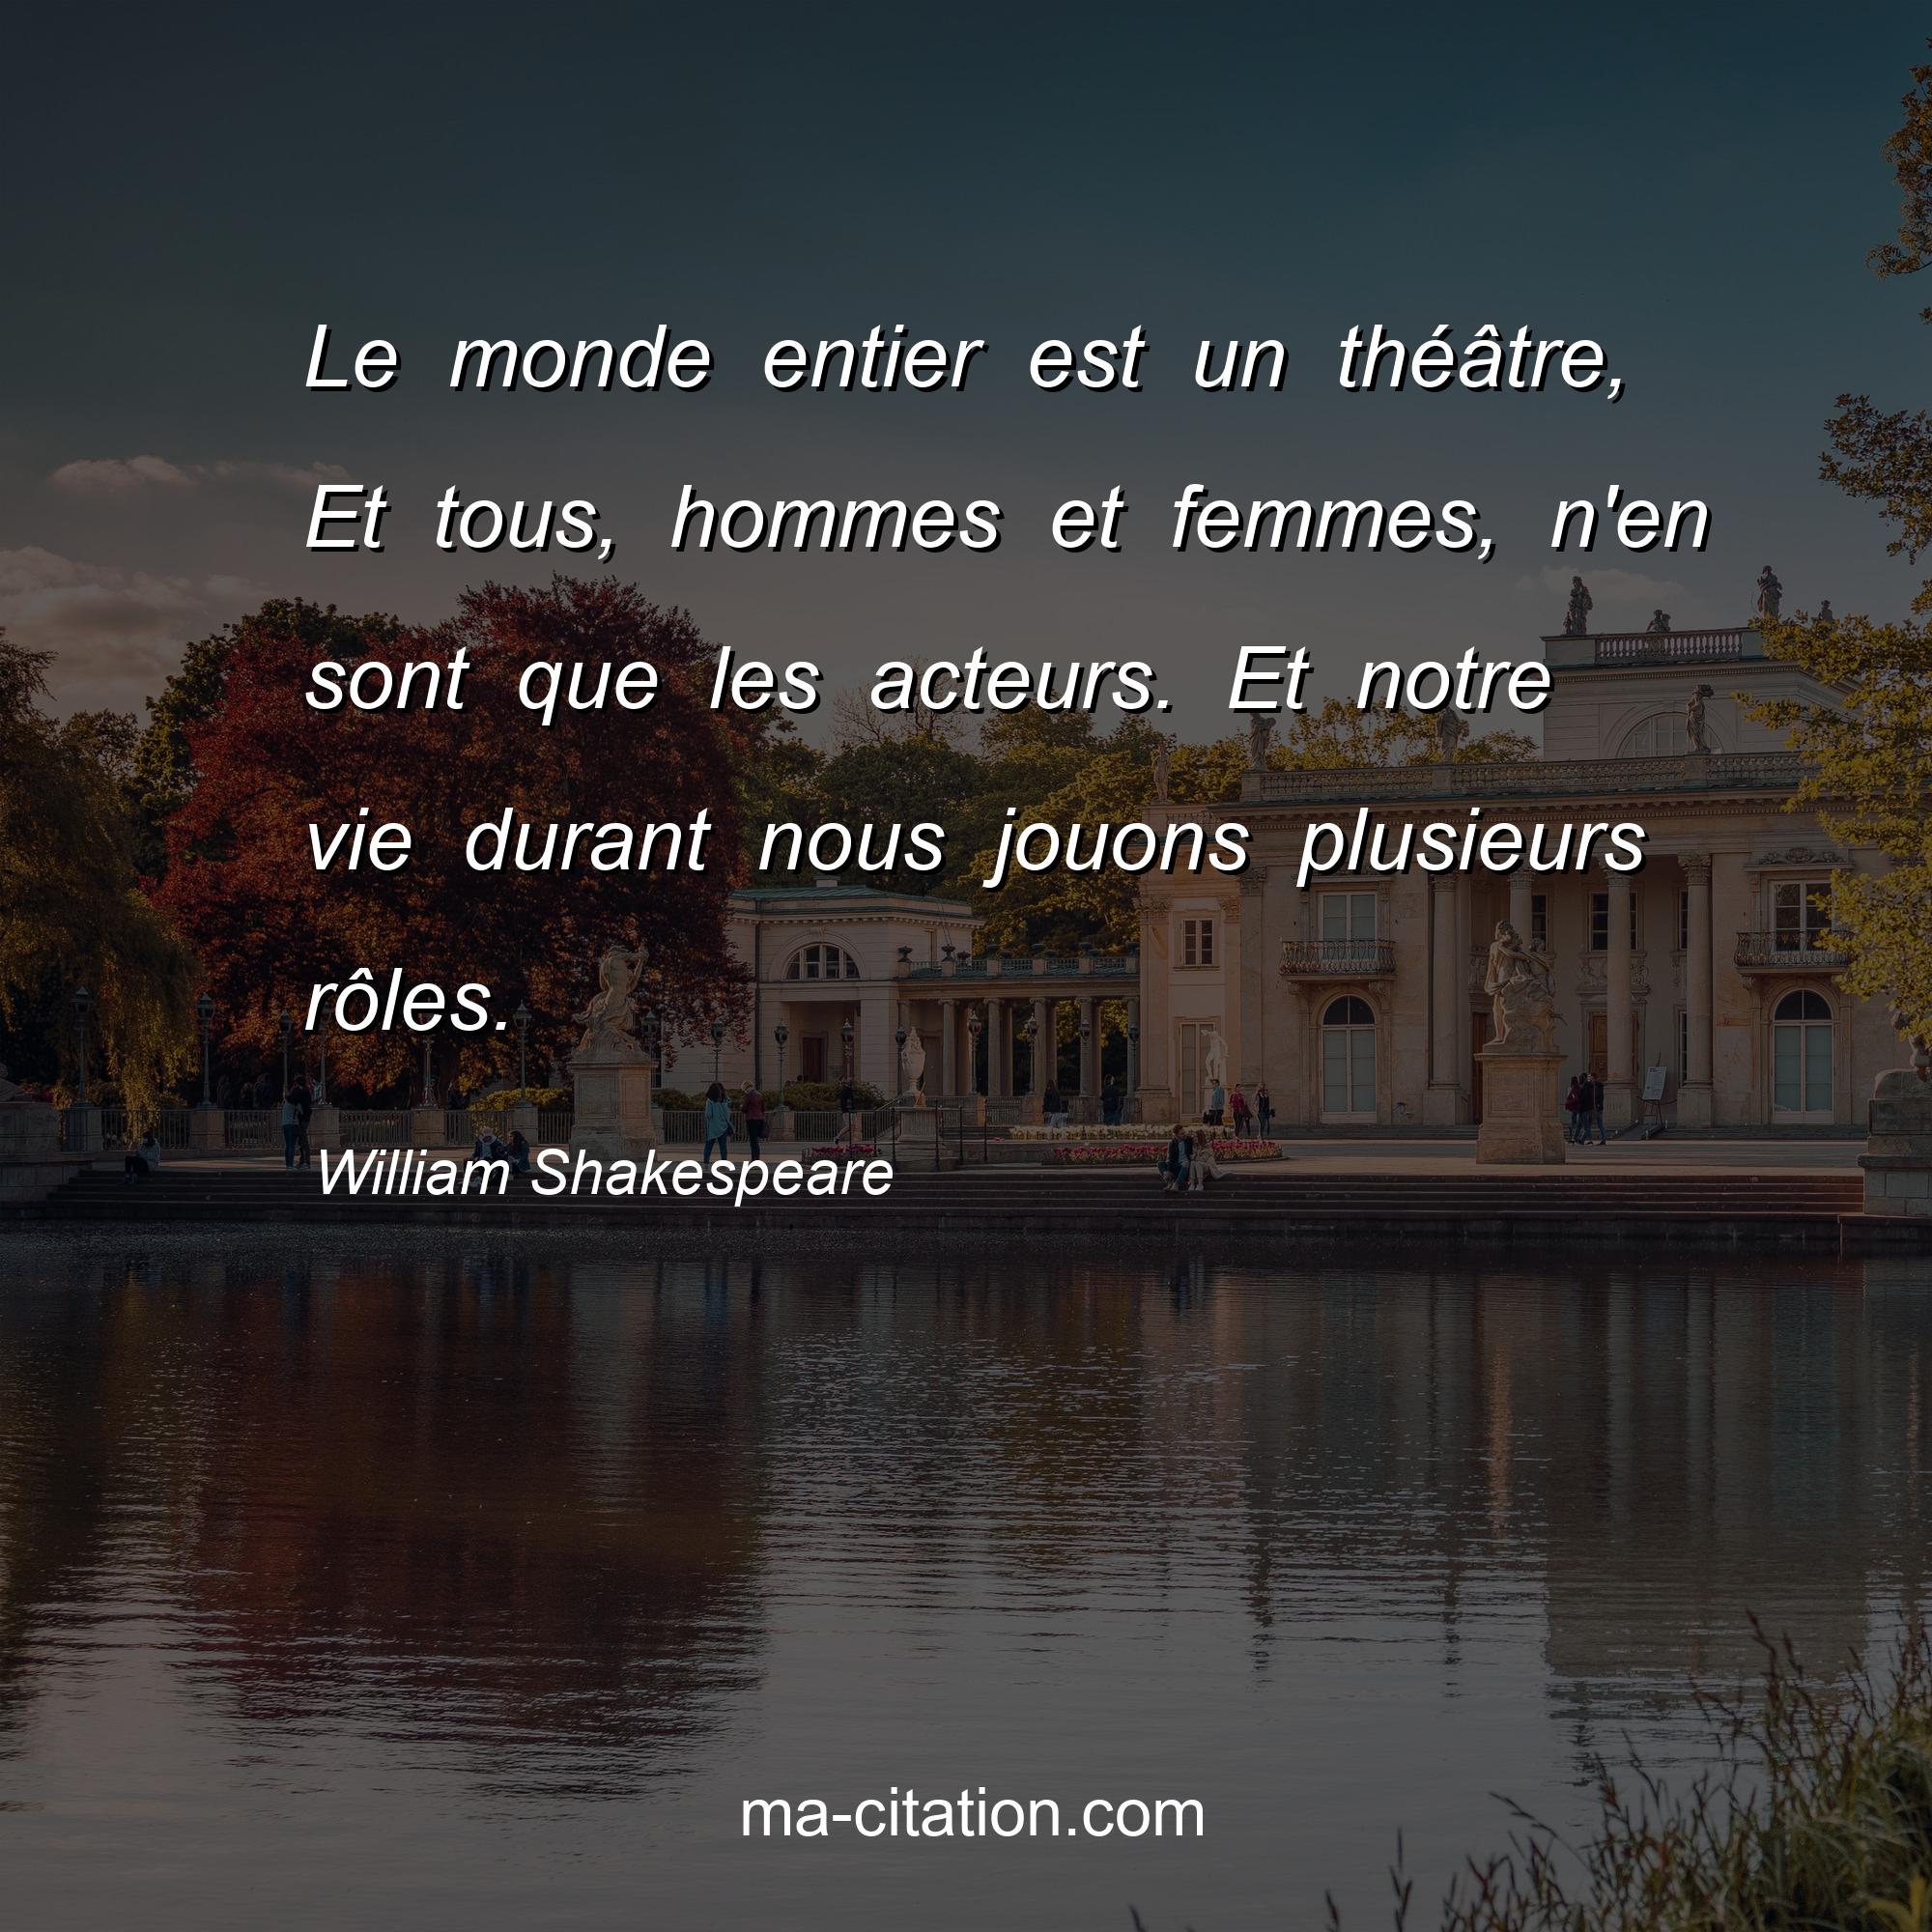 William Shakespeare : Le monde entier est un théâtre, Et tous, hommes et femmes, n'en sont que les acteurs. Et notre vie durant nous jouons plusieurs rôles.